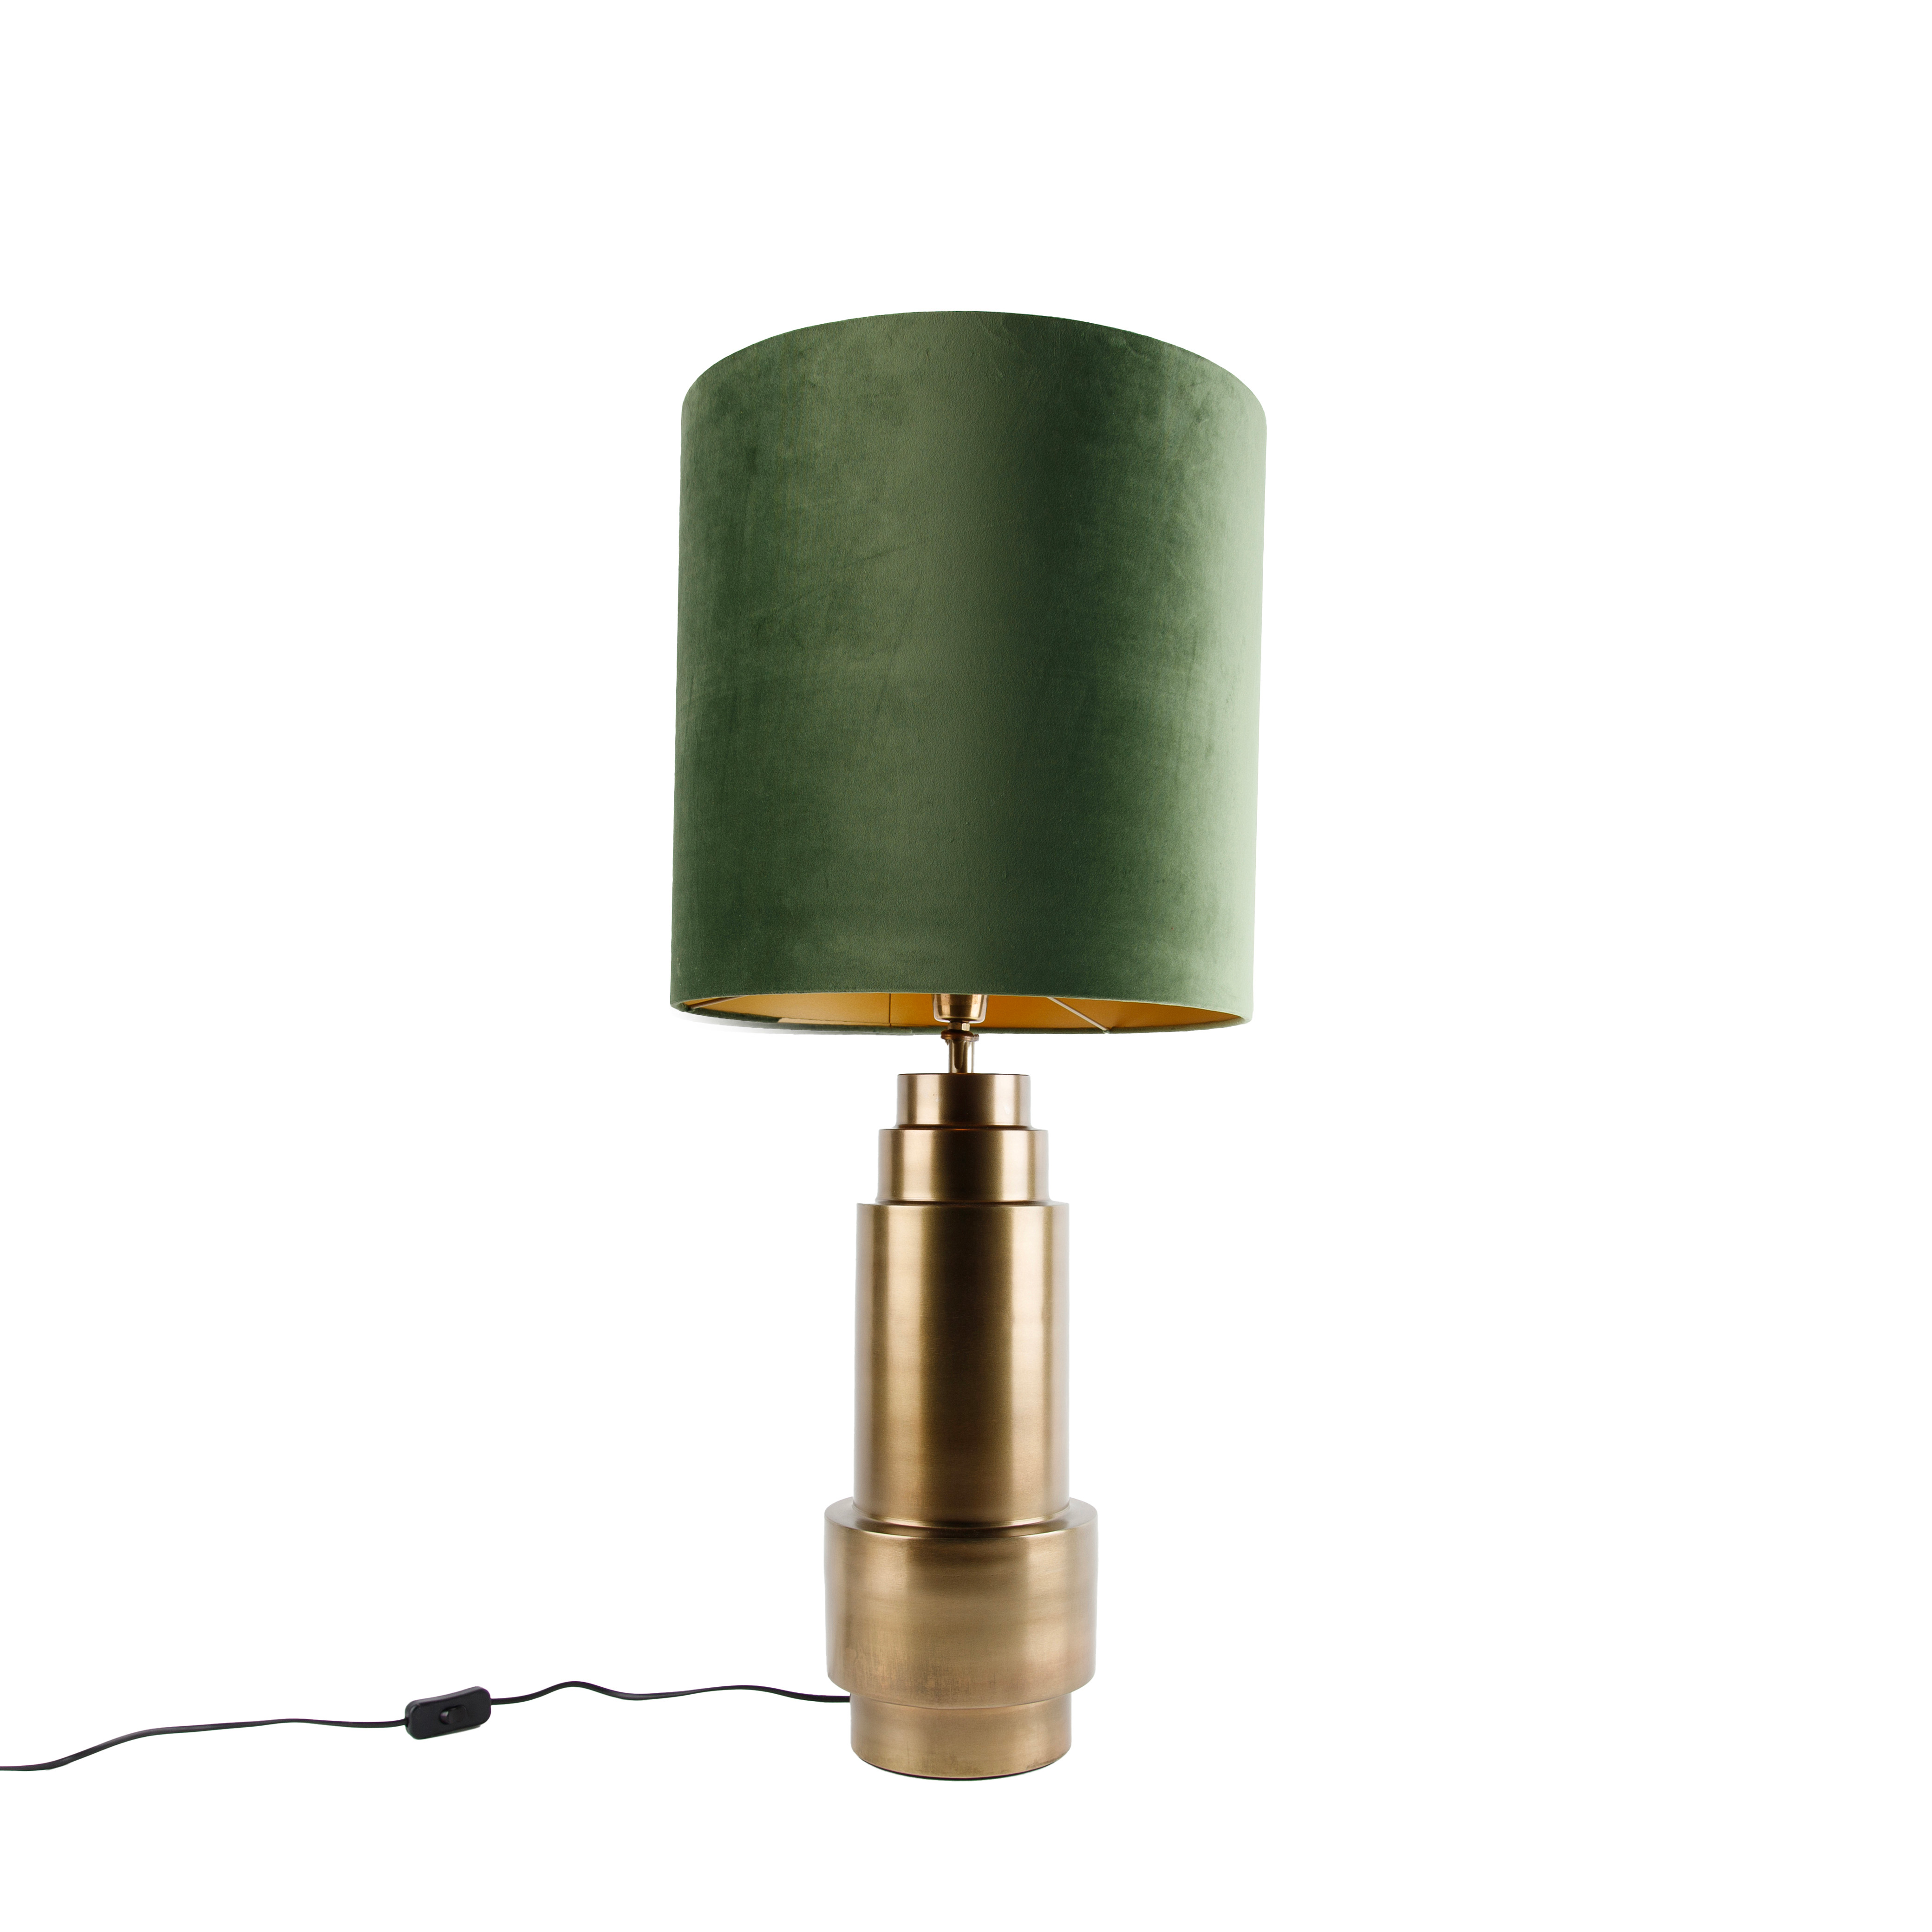 Tafellamp brons velours kap groen met goud 40 cm - Bruut